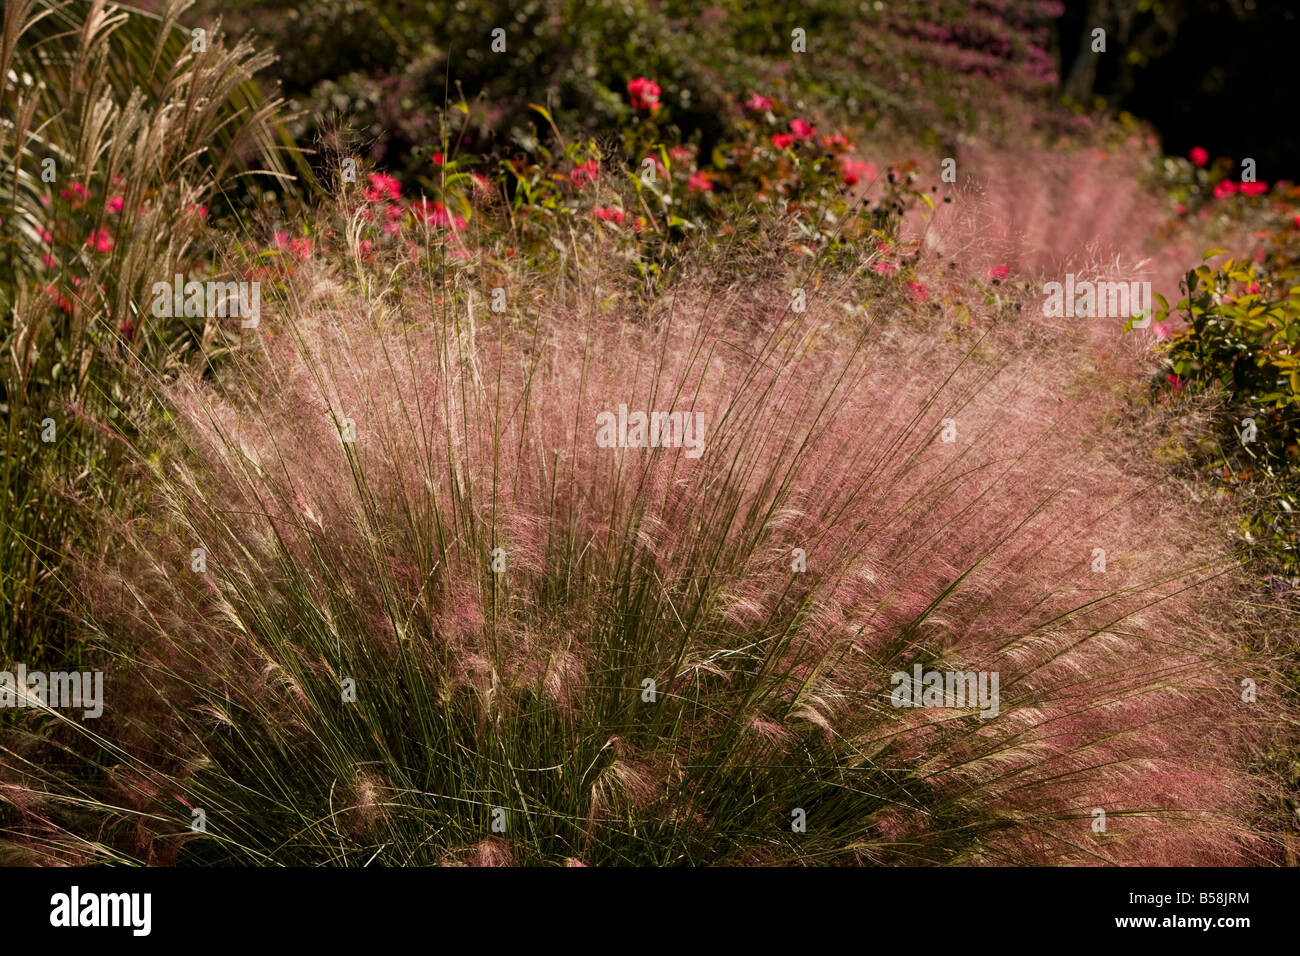 Im Herbst, rosa Muehly Rasen schafft einen spektakulären wogenden Blütenstand massierten lebendige rosa luftigen Blüten auf 4 Fuß Stielen. Stockfoto